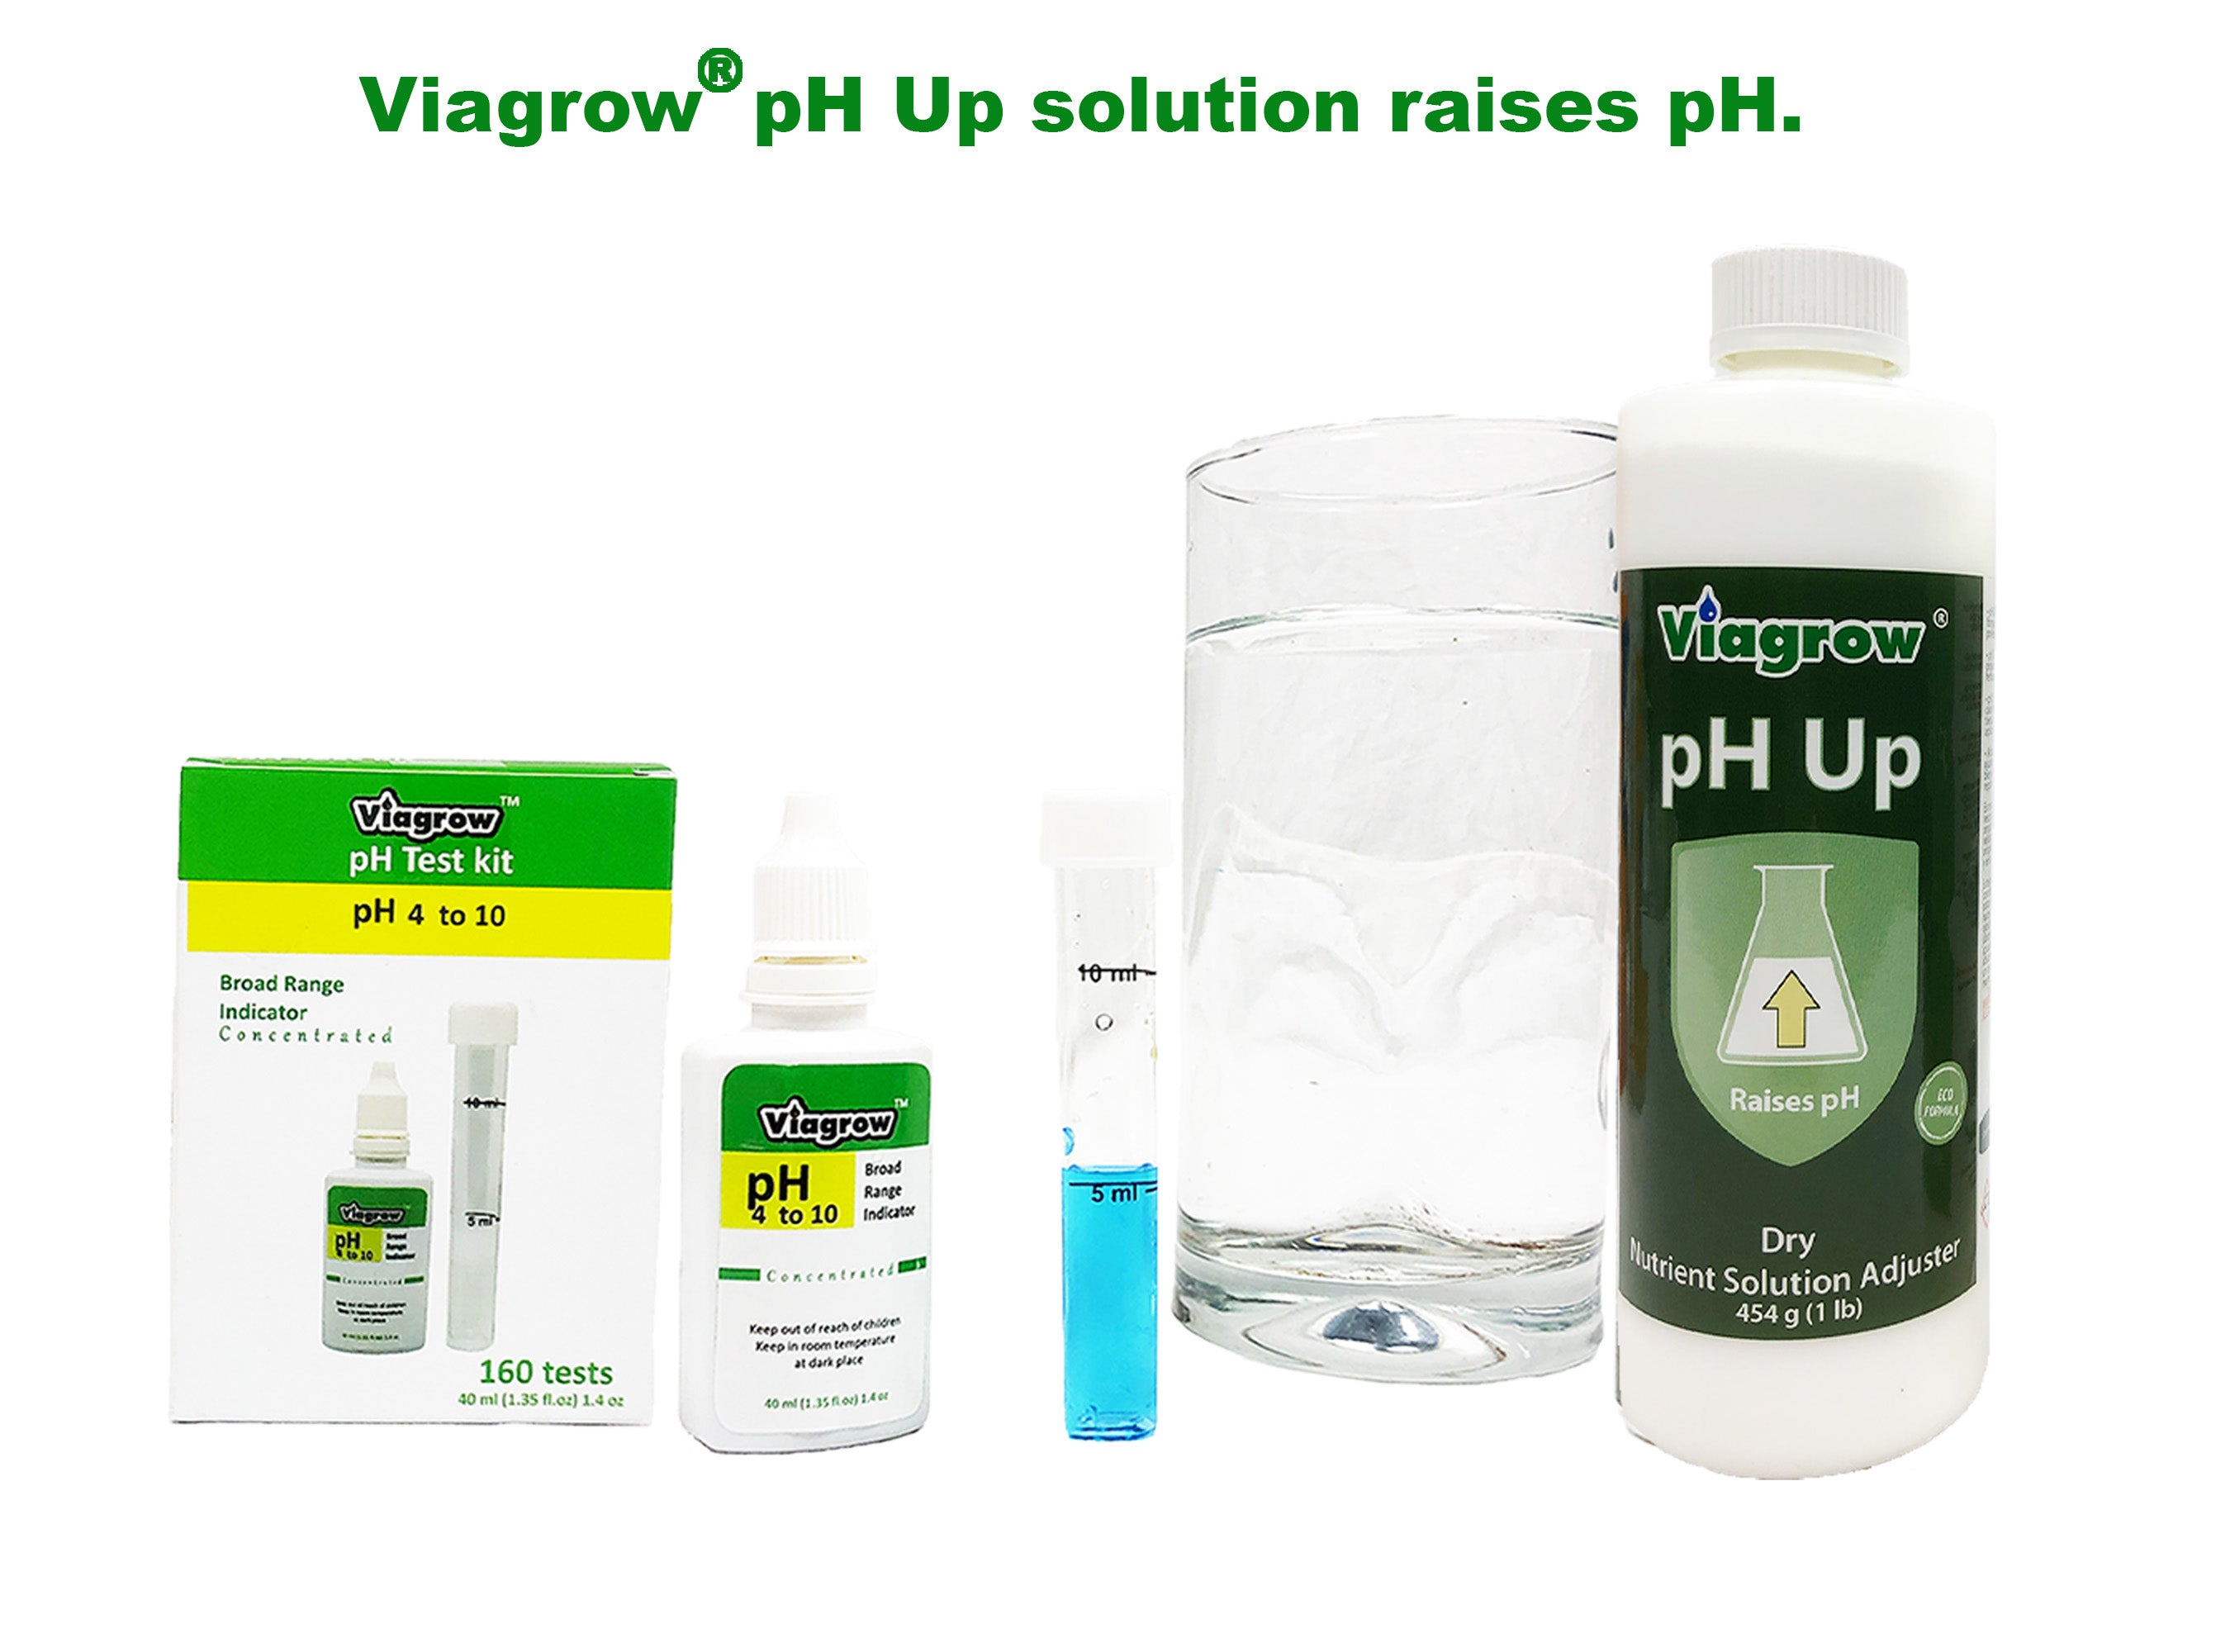 Viagrow Natural pH Up Adjusting Crystals, LB, Green